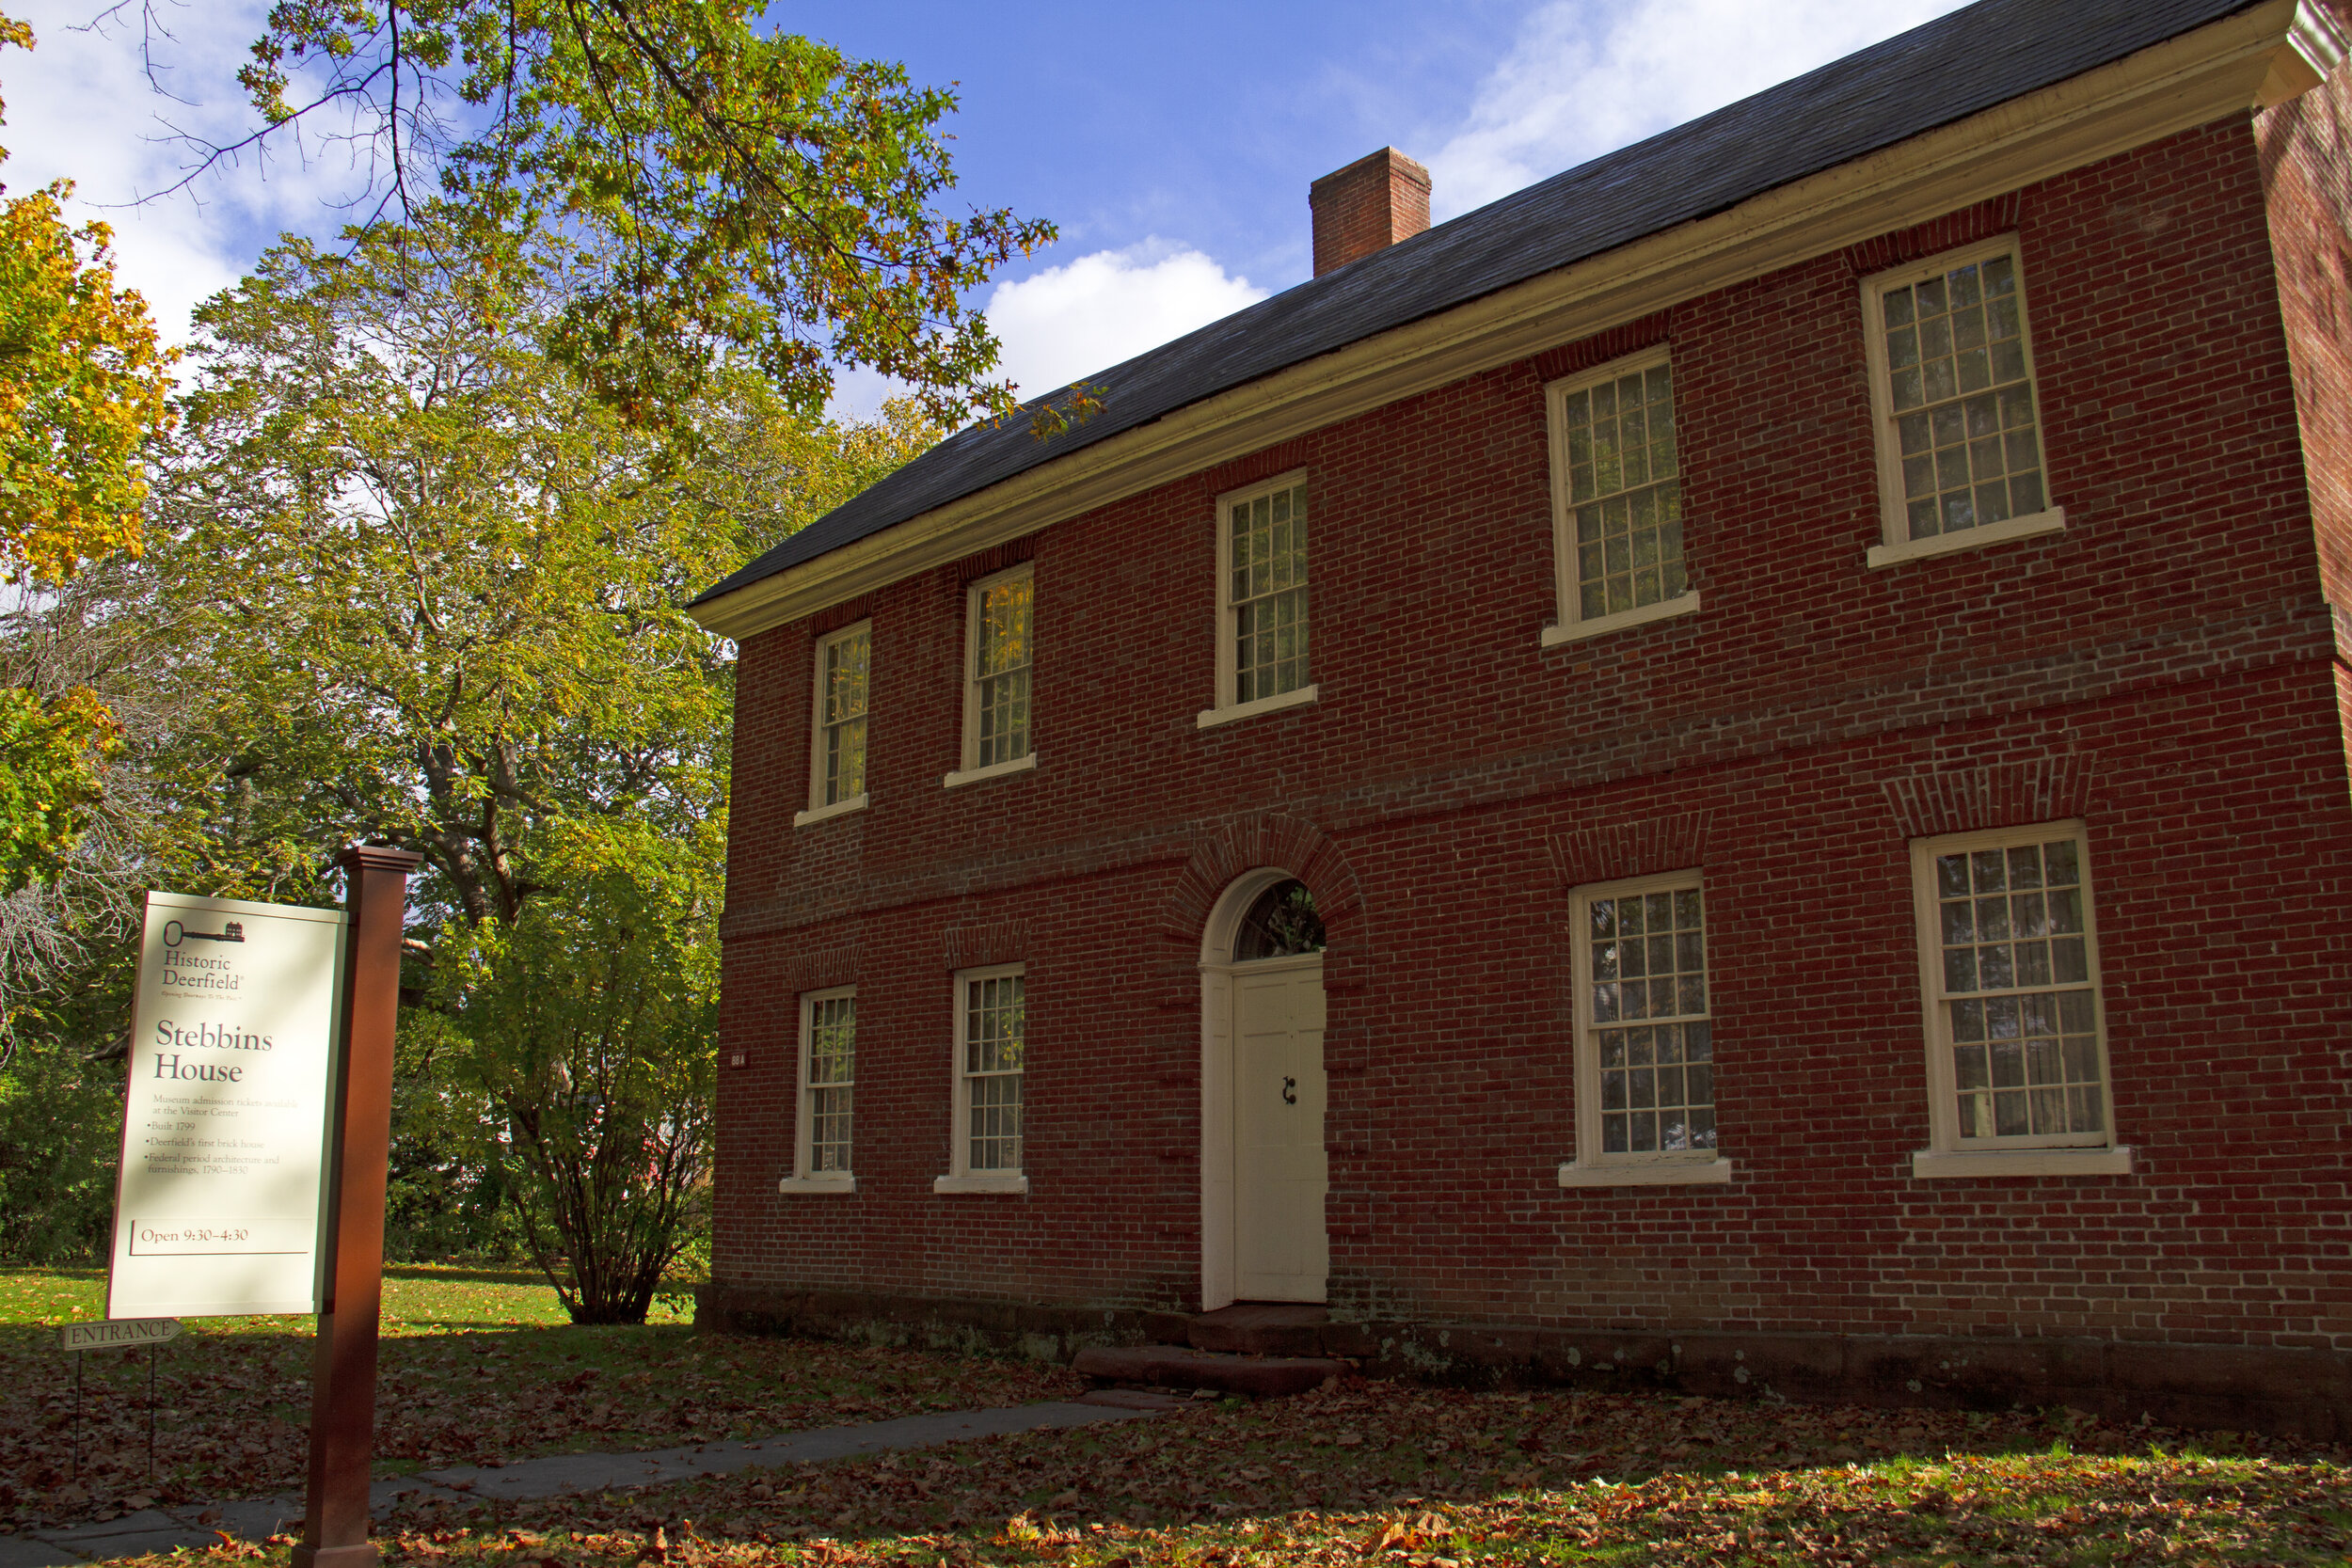 La maison Stebbins, bâtie en 1799